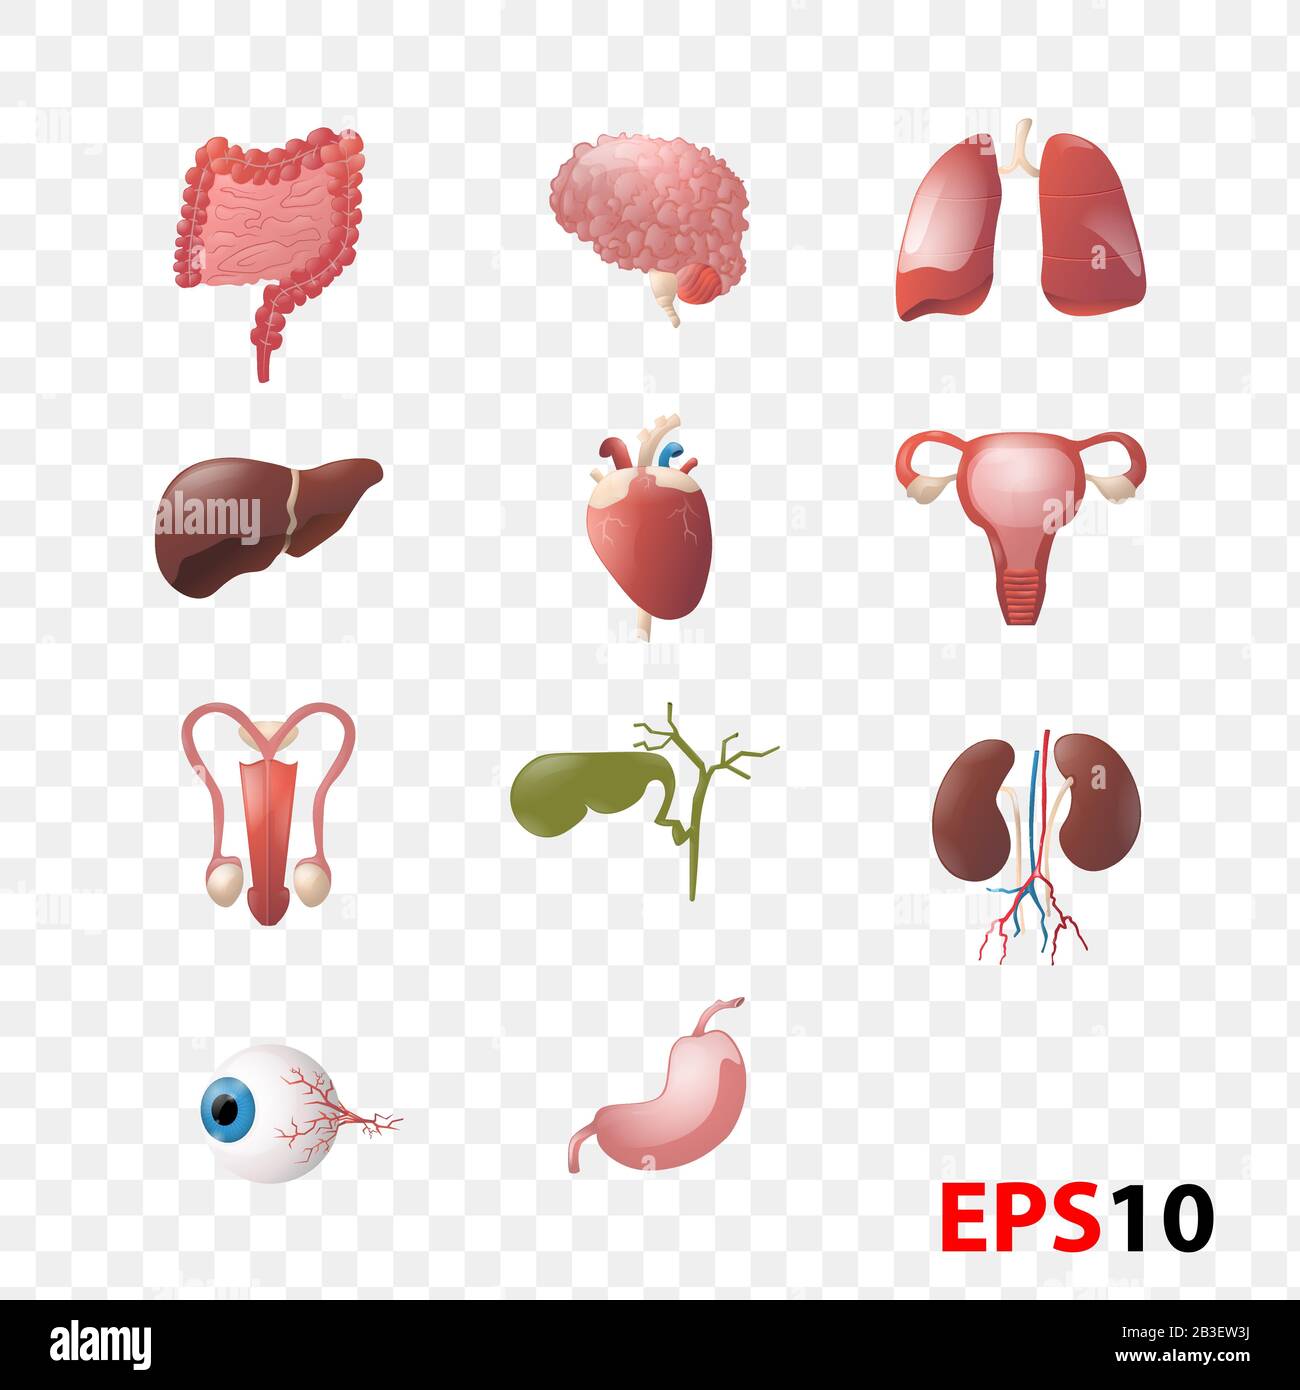 Abbildung: Anatomiesatz für menschliche innere Organe Stock Vektor